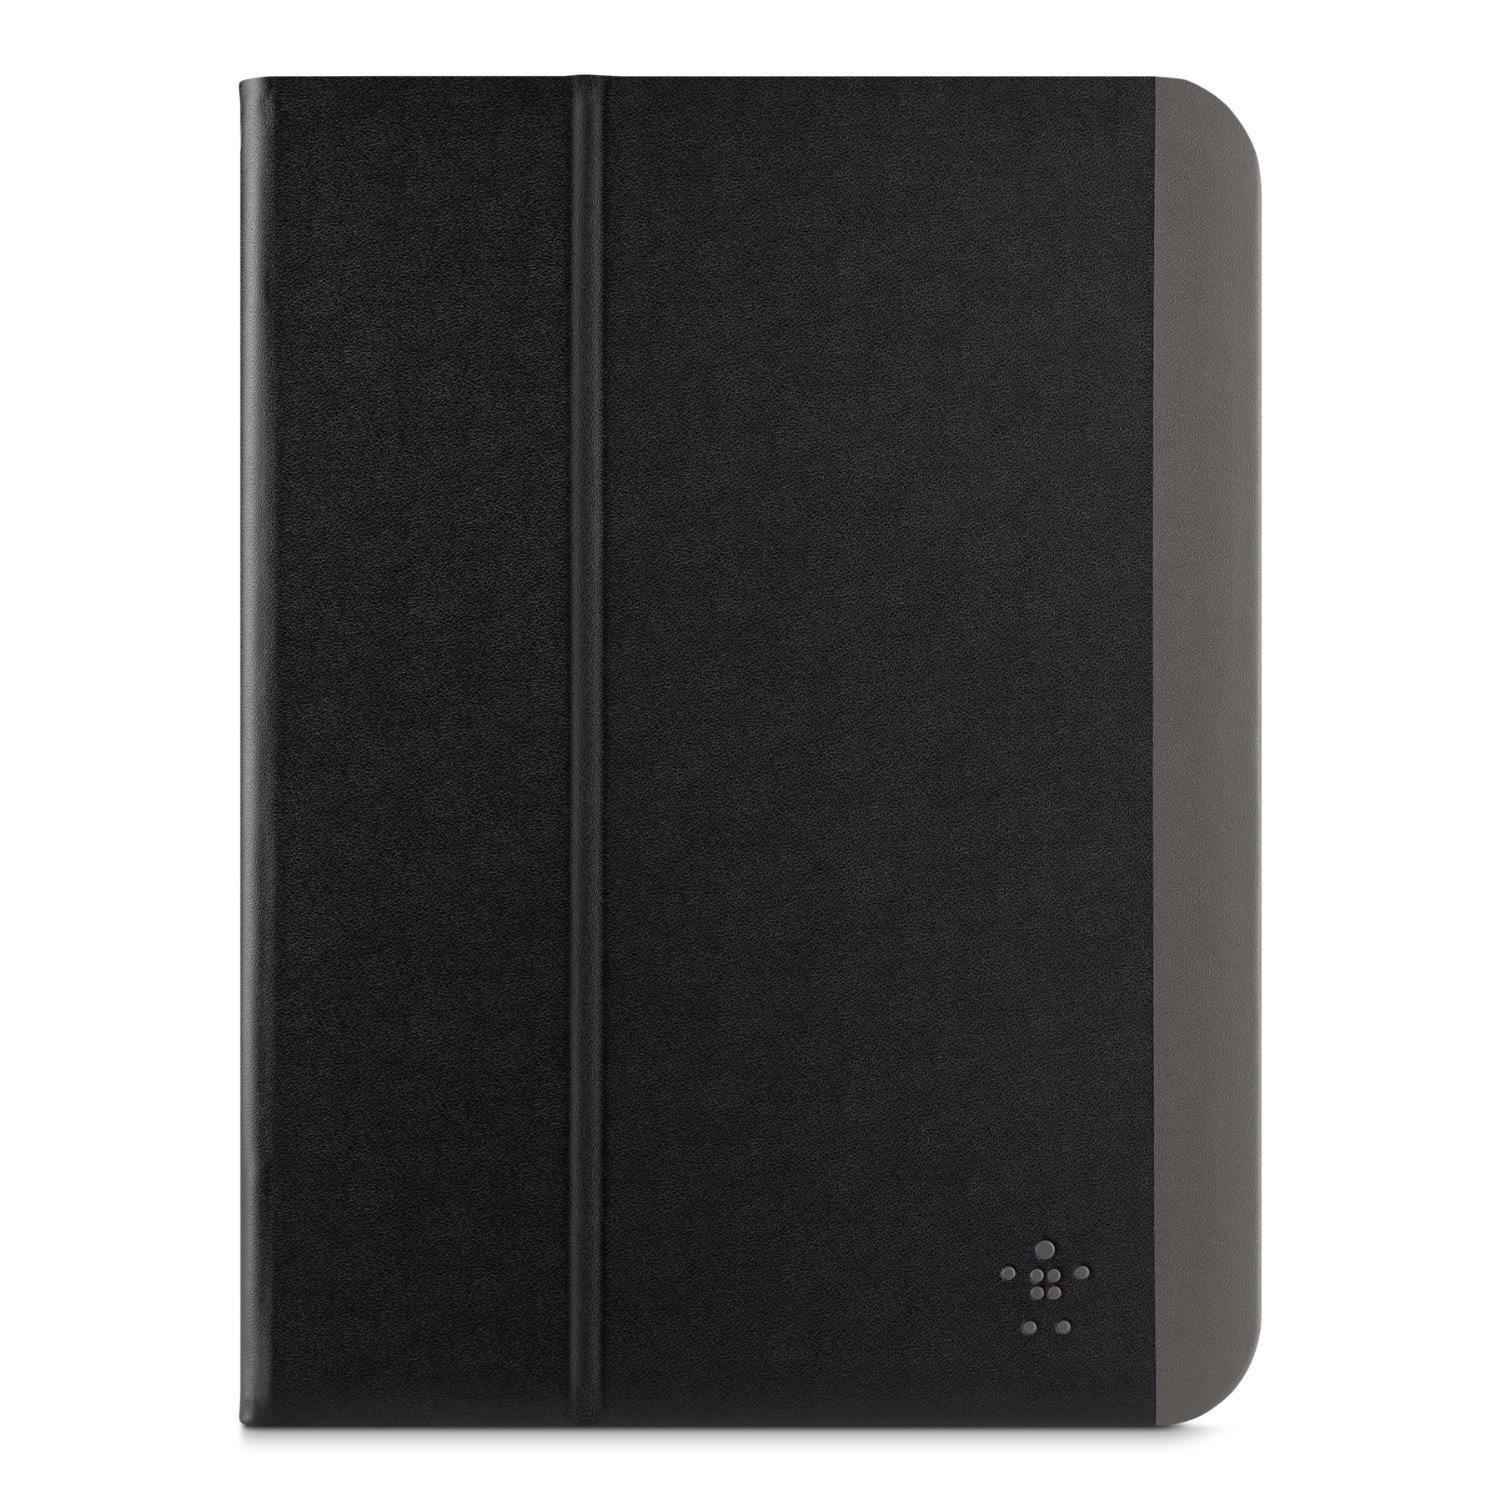 Funda para iPad Air 2 and iPad Air marca Belkin color Negro y gris